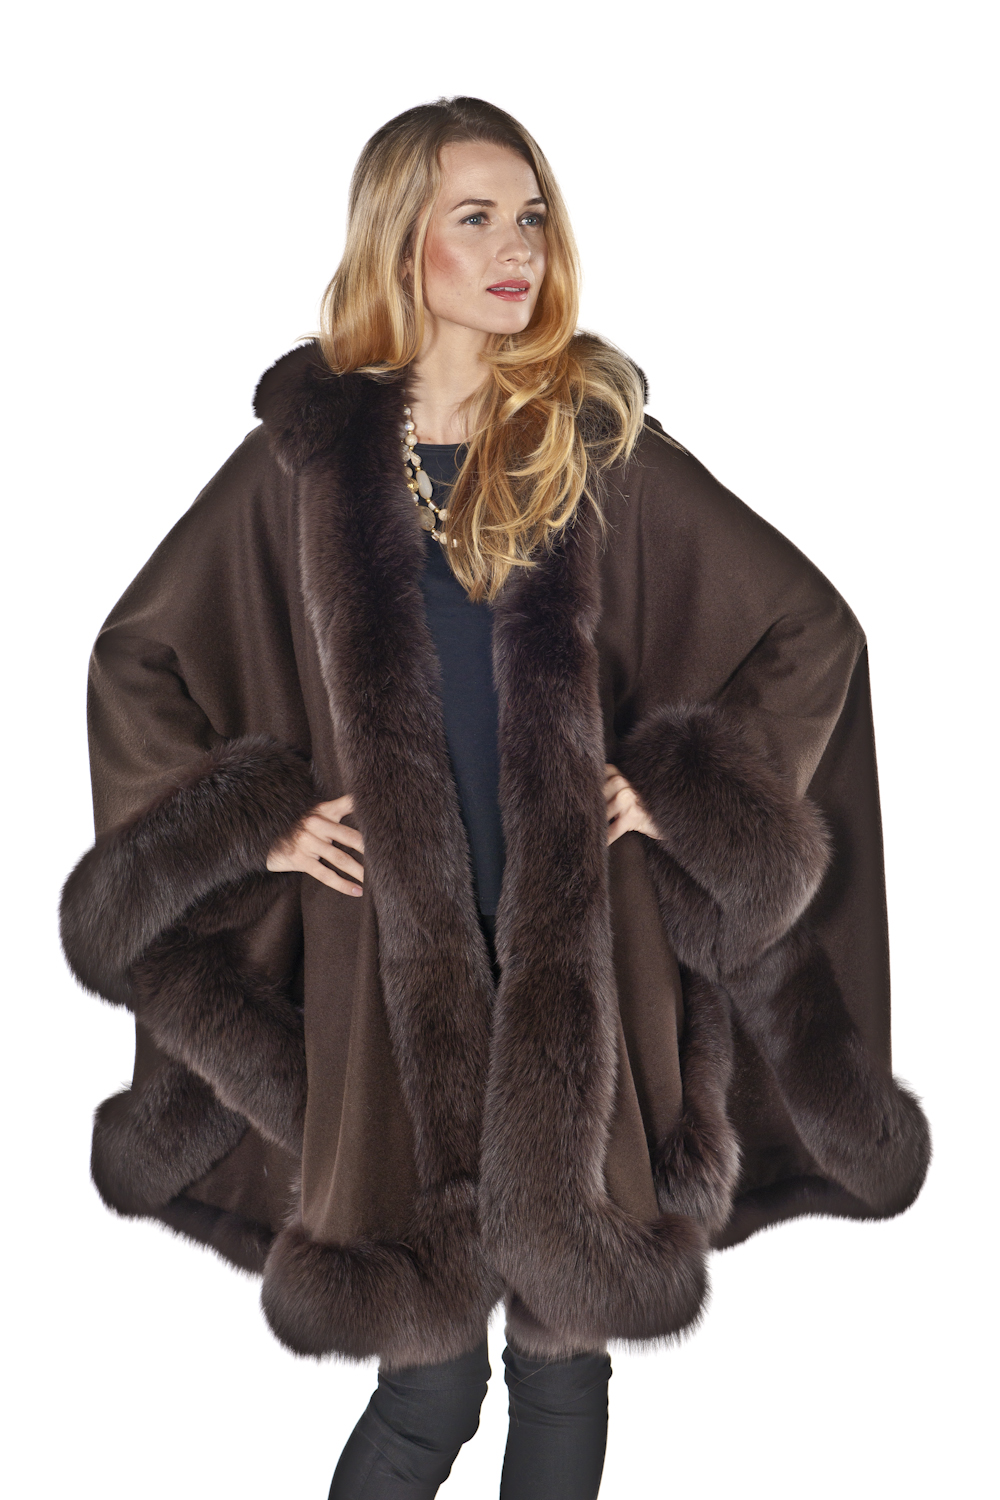 Brown Plus Size Cashmere Cape – Detachable Hood | Madison Avenue Mall Furs